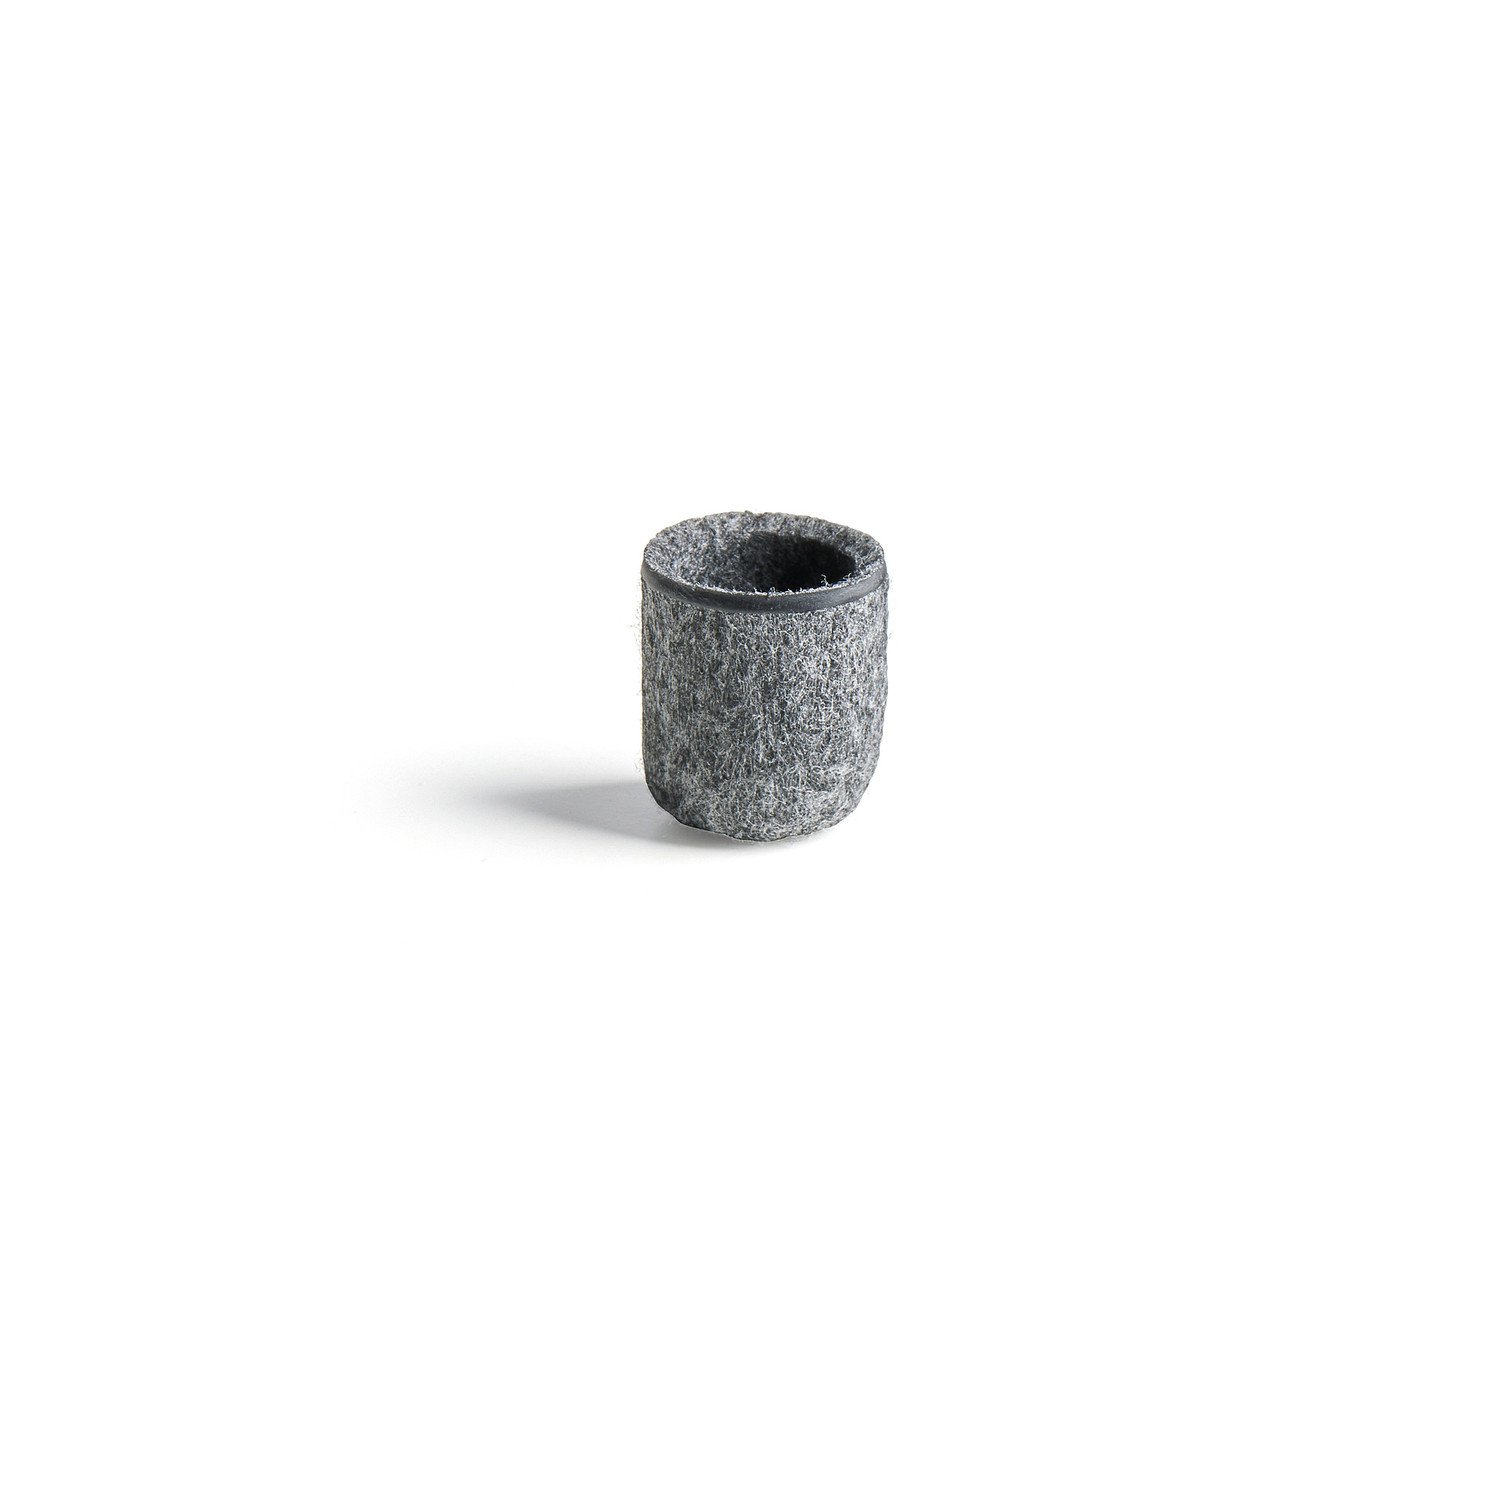 Filcová podložka, Ø 19 mm, antracitově šedá